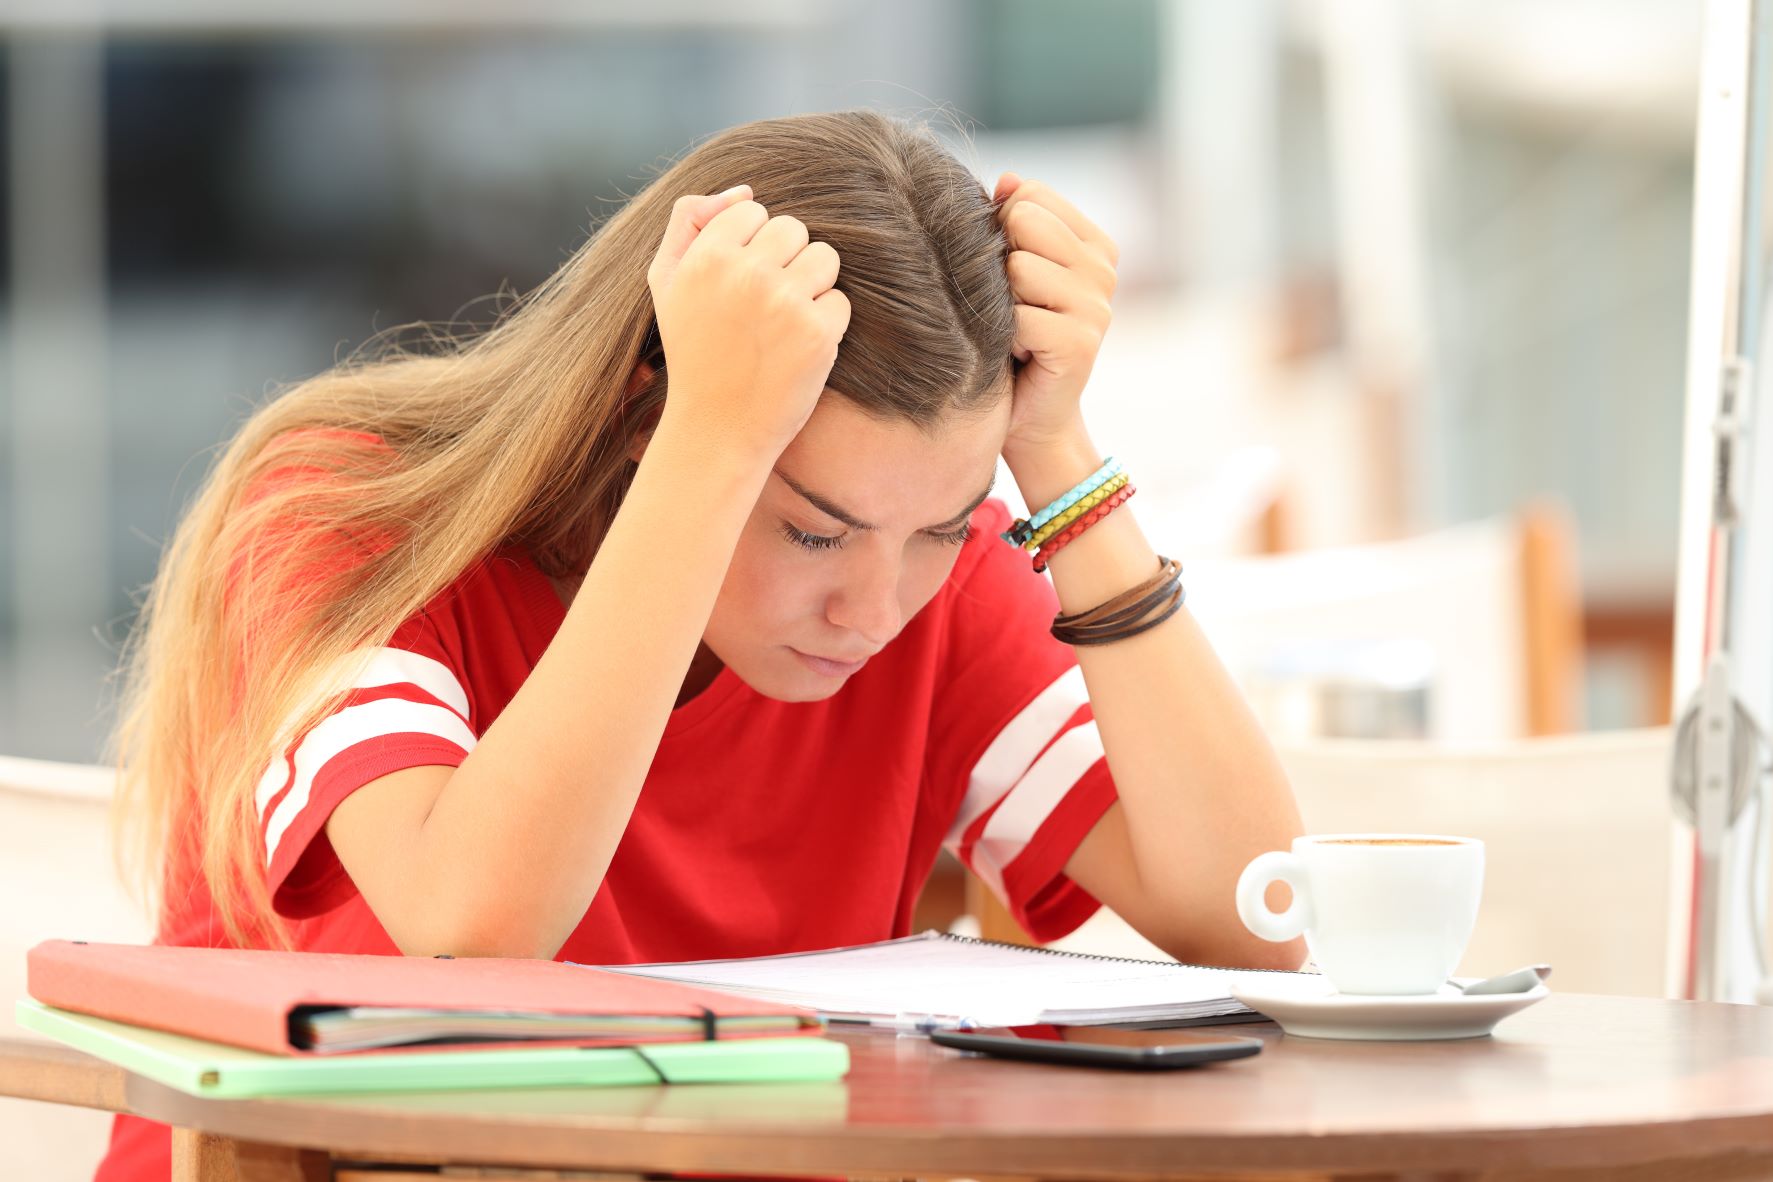 راه های مقابله با استرس کنکور و امتحانات مهم